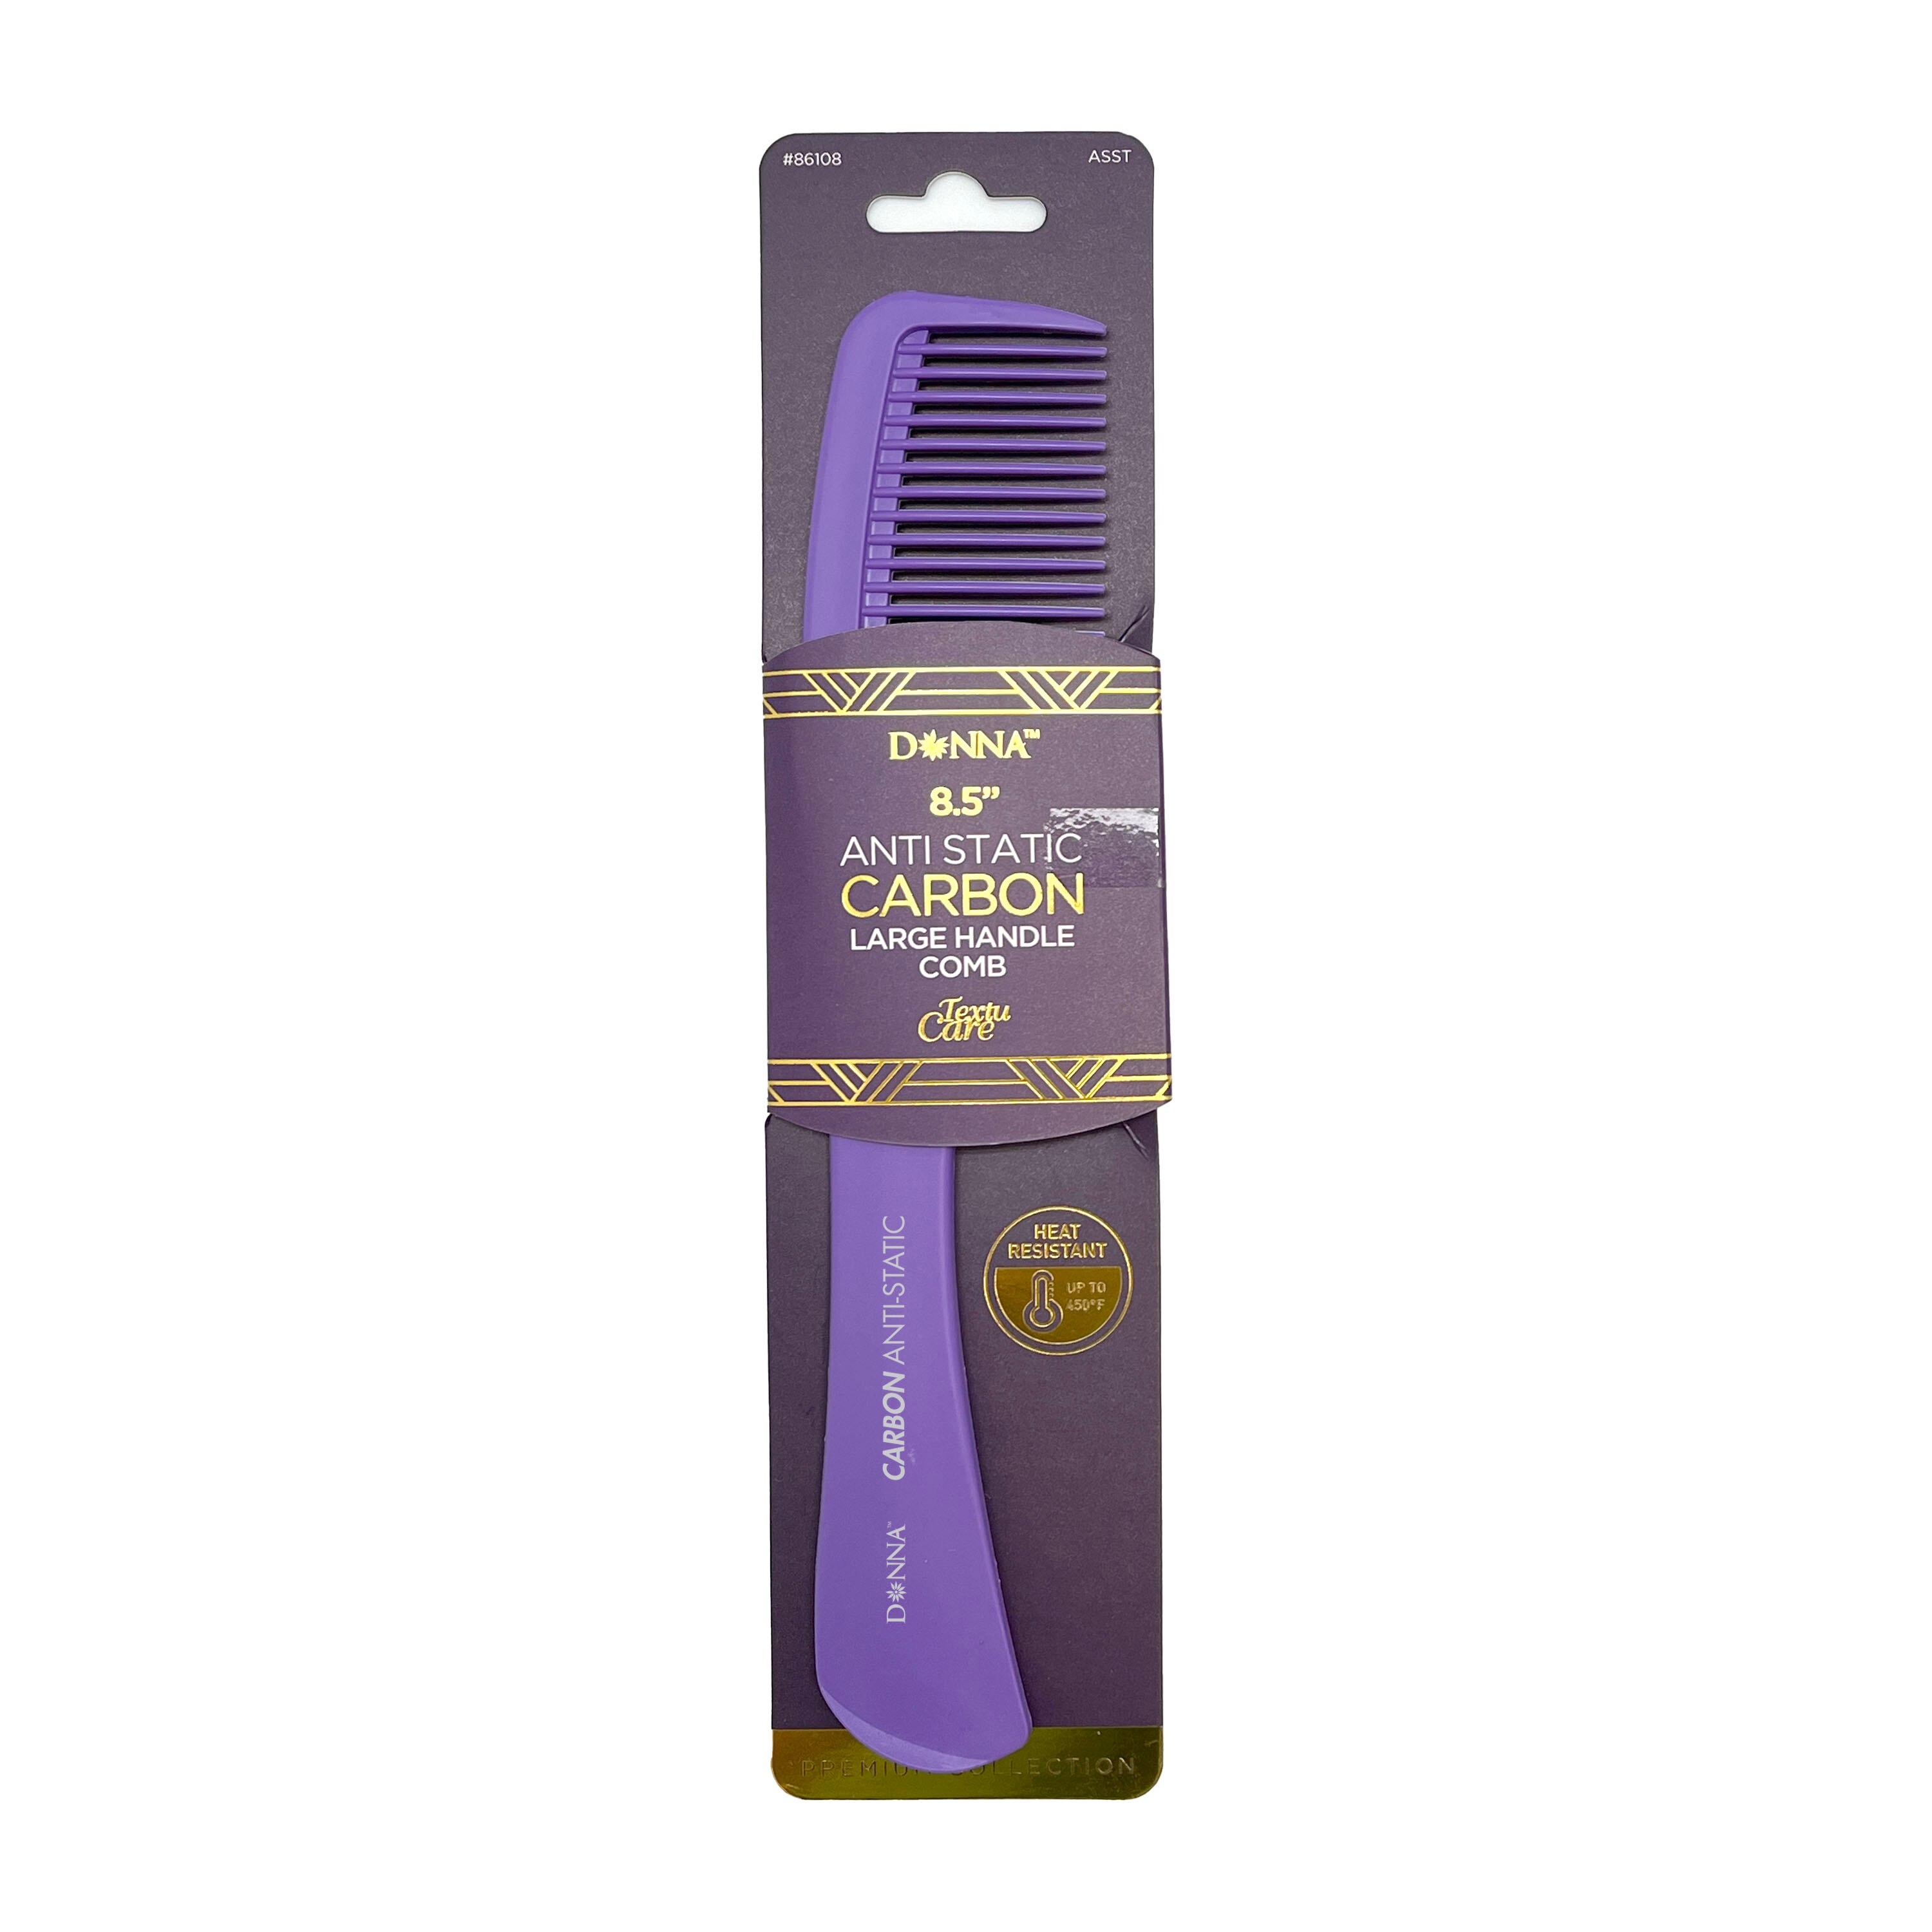 Donna Carbon Large Handle Comb , CVS